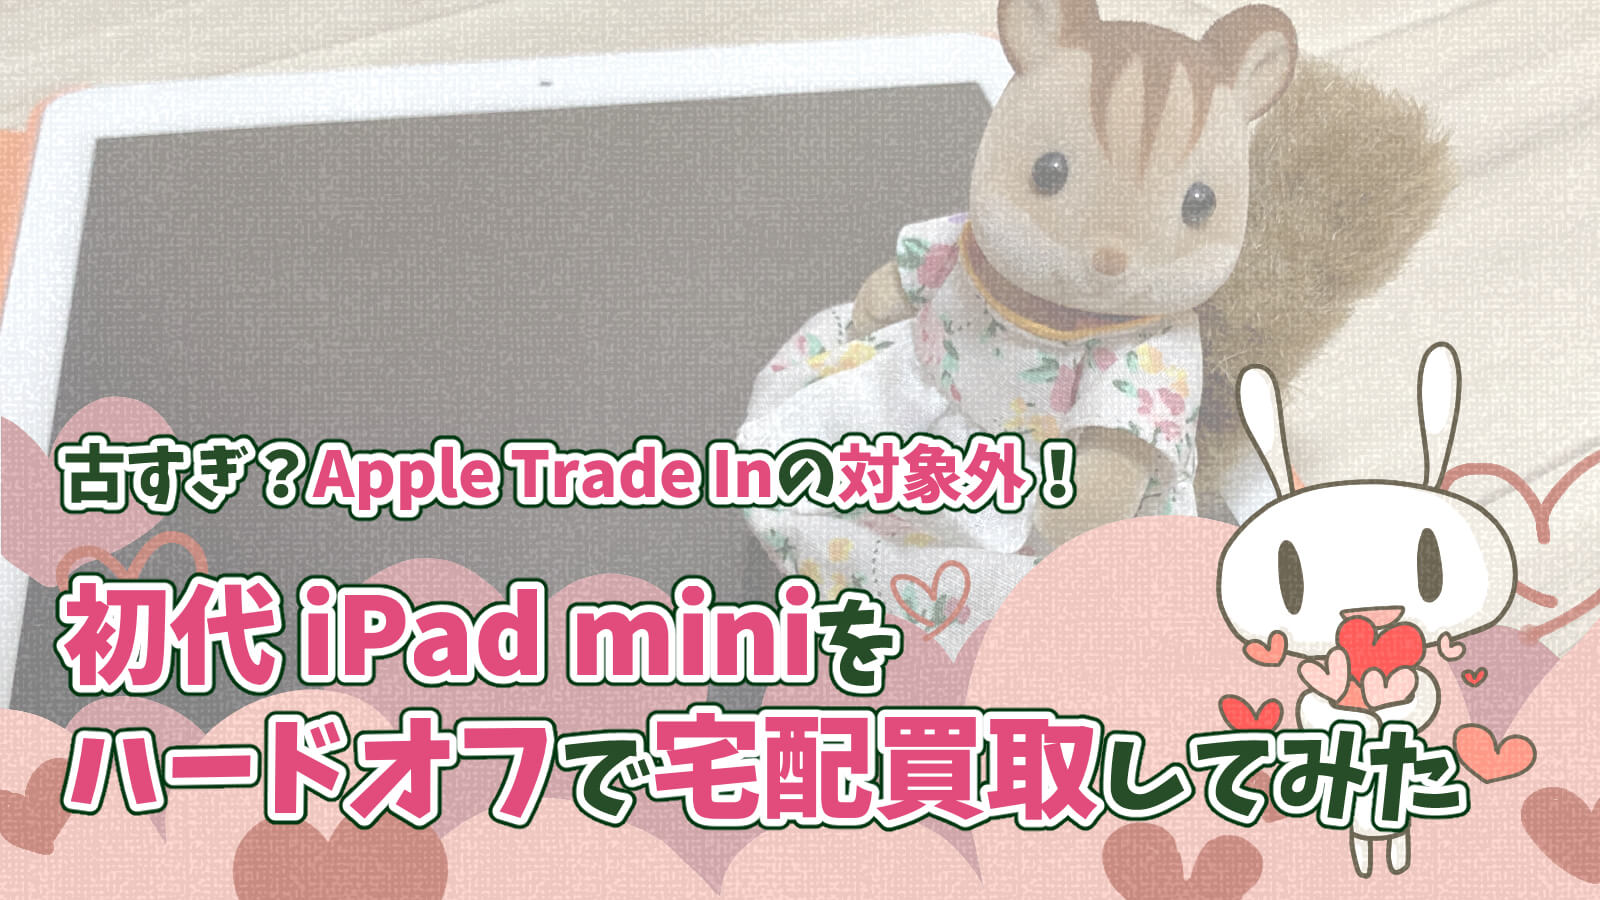 初代iPad mini ハードオフのオファー買取体験談AppleTradeIn